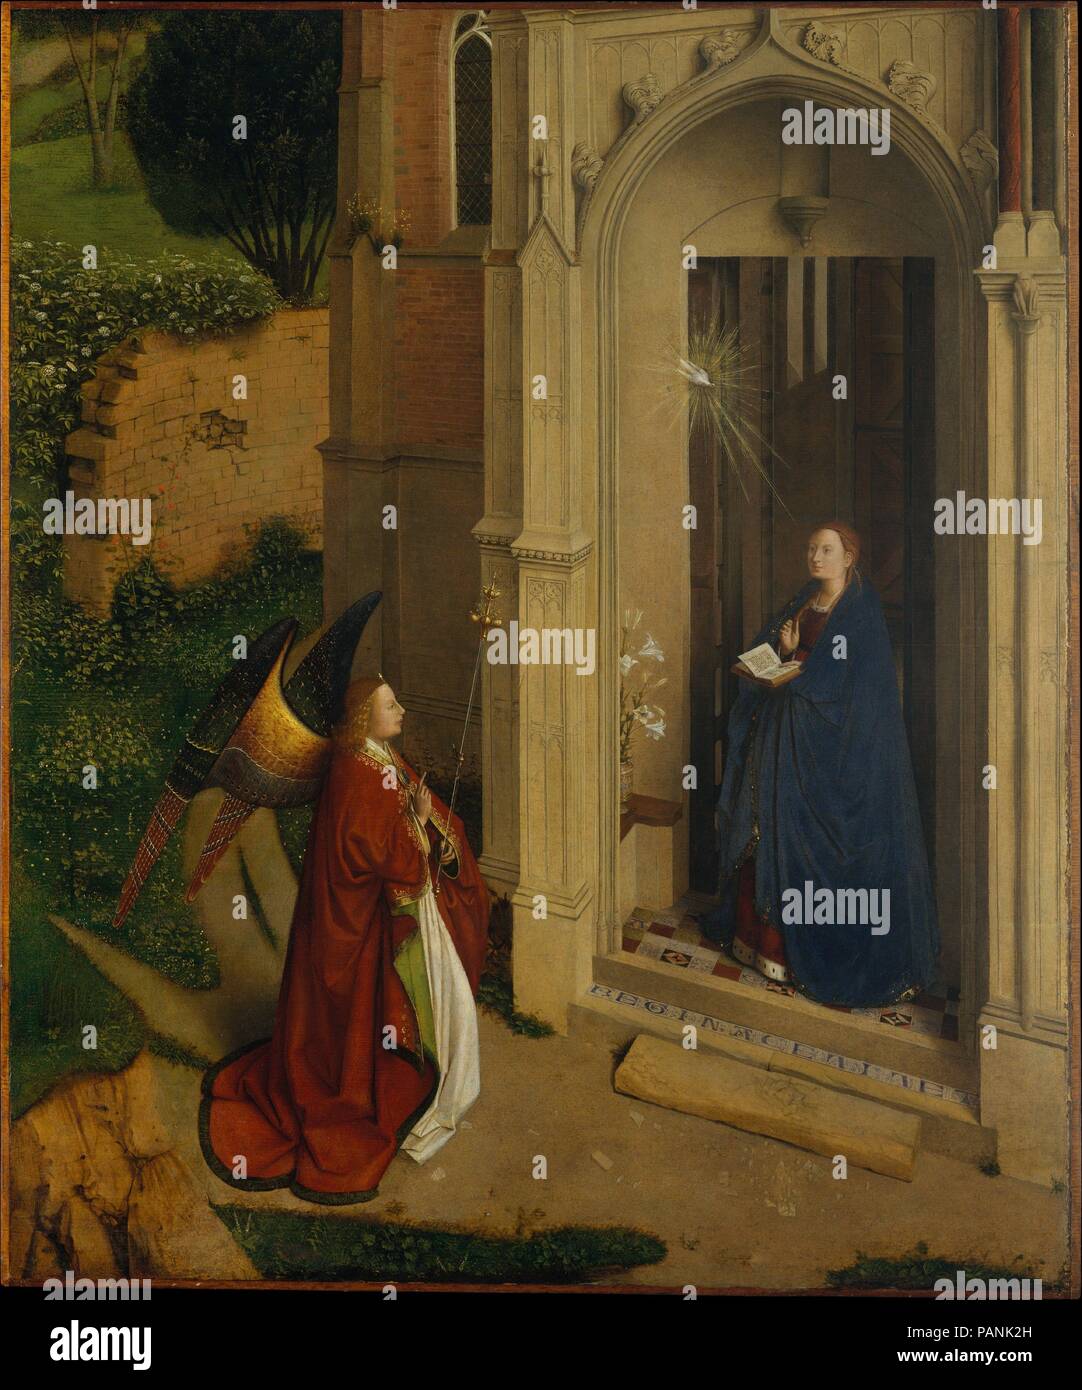 La anunciación. Artista: atribuido a Petrus Christus (Netherlandish, Baarle-Hertog (Baerle-Duc), activo en 1444 murió 1475/76 de Brujas). Dimensiones: Total 31 x 25 7/8 pulg. (78,7 x 65,7 cm); superficie pintada 30 1/2 x 25 1/4 pulg. (77,5 x 64,1 cm). Fecha: ca. 1450. Esta Anunciación es excepcional por su vista de pájaro y al aire libre. Resguardado en la puerta de una iglesia y saludado por Gabriel, María se presenta no sólo como el destinatario del mensaje de la Encarnación, sino también como la personificación de la Iglesia (<i>Ecclesia</i>). La arquitectura, que es románico (derecha) y Foto de stock